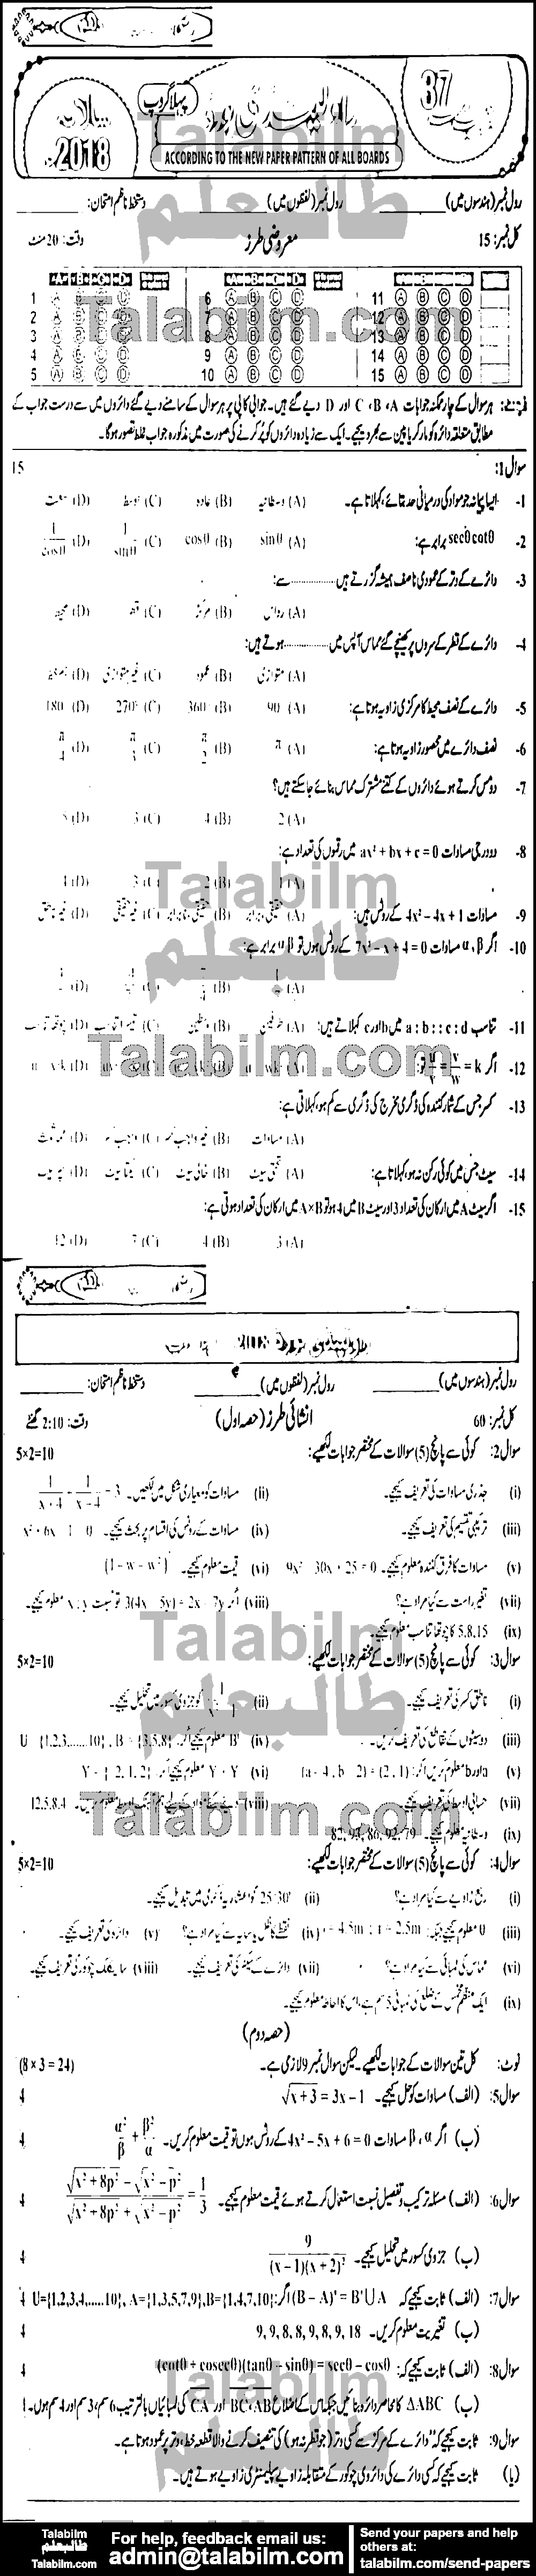 Math 0 past paper for Urdu Medium 2018 Group-I